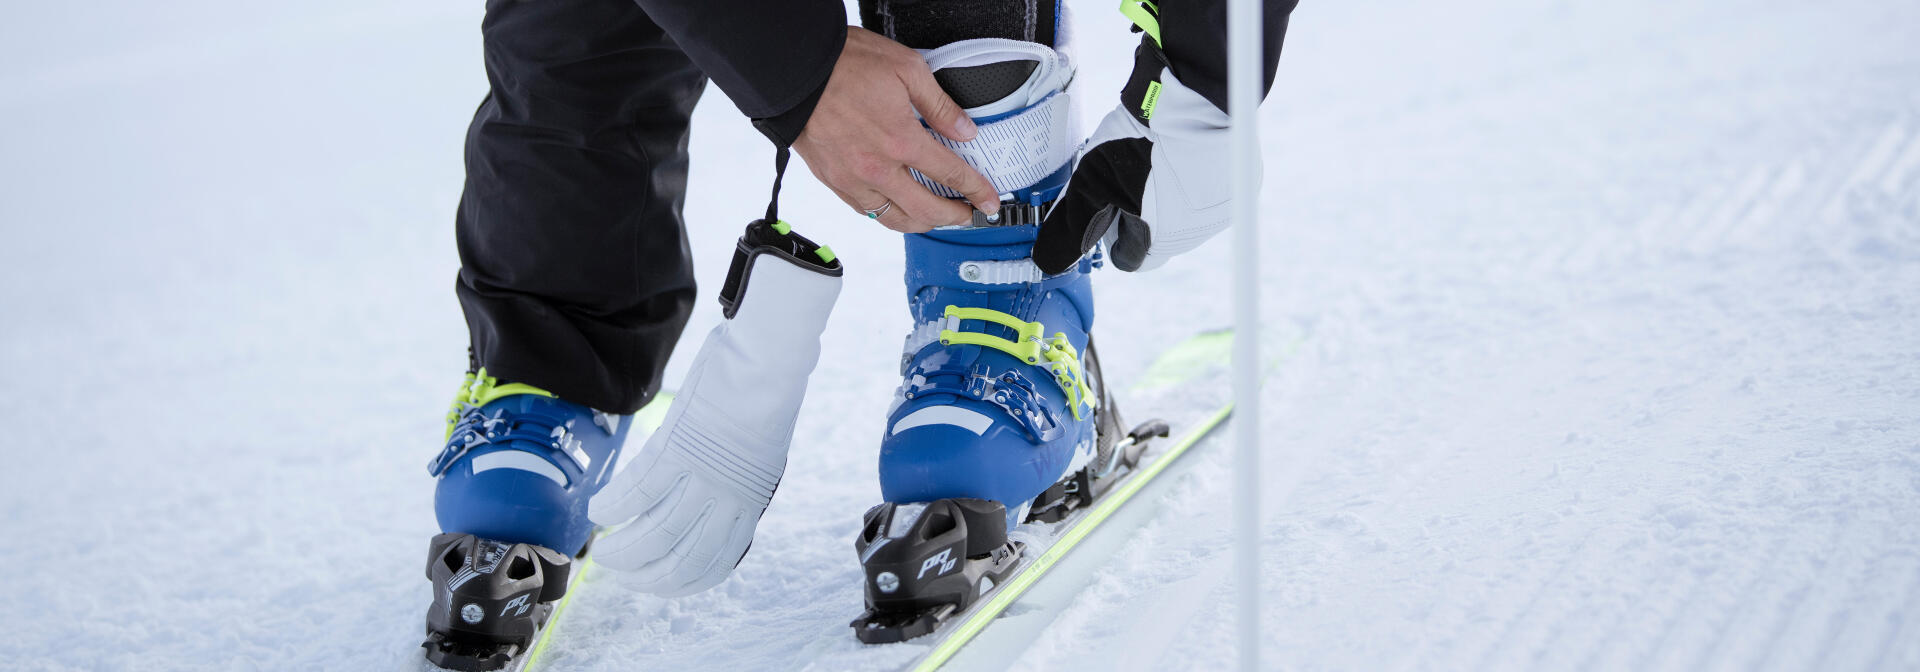 bien serrer les crochets des chaussures de ski - titre